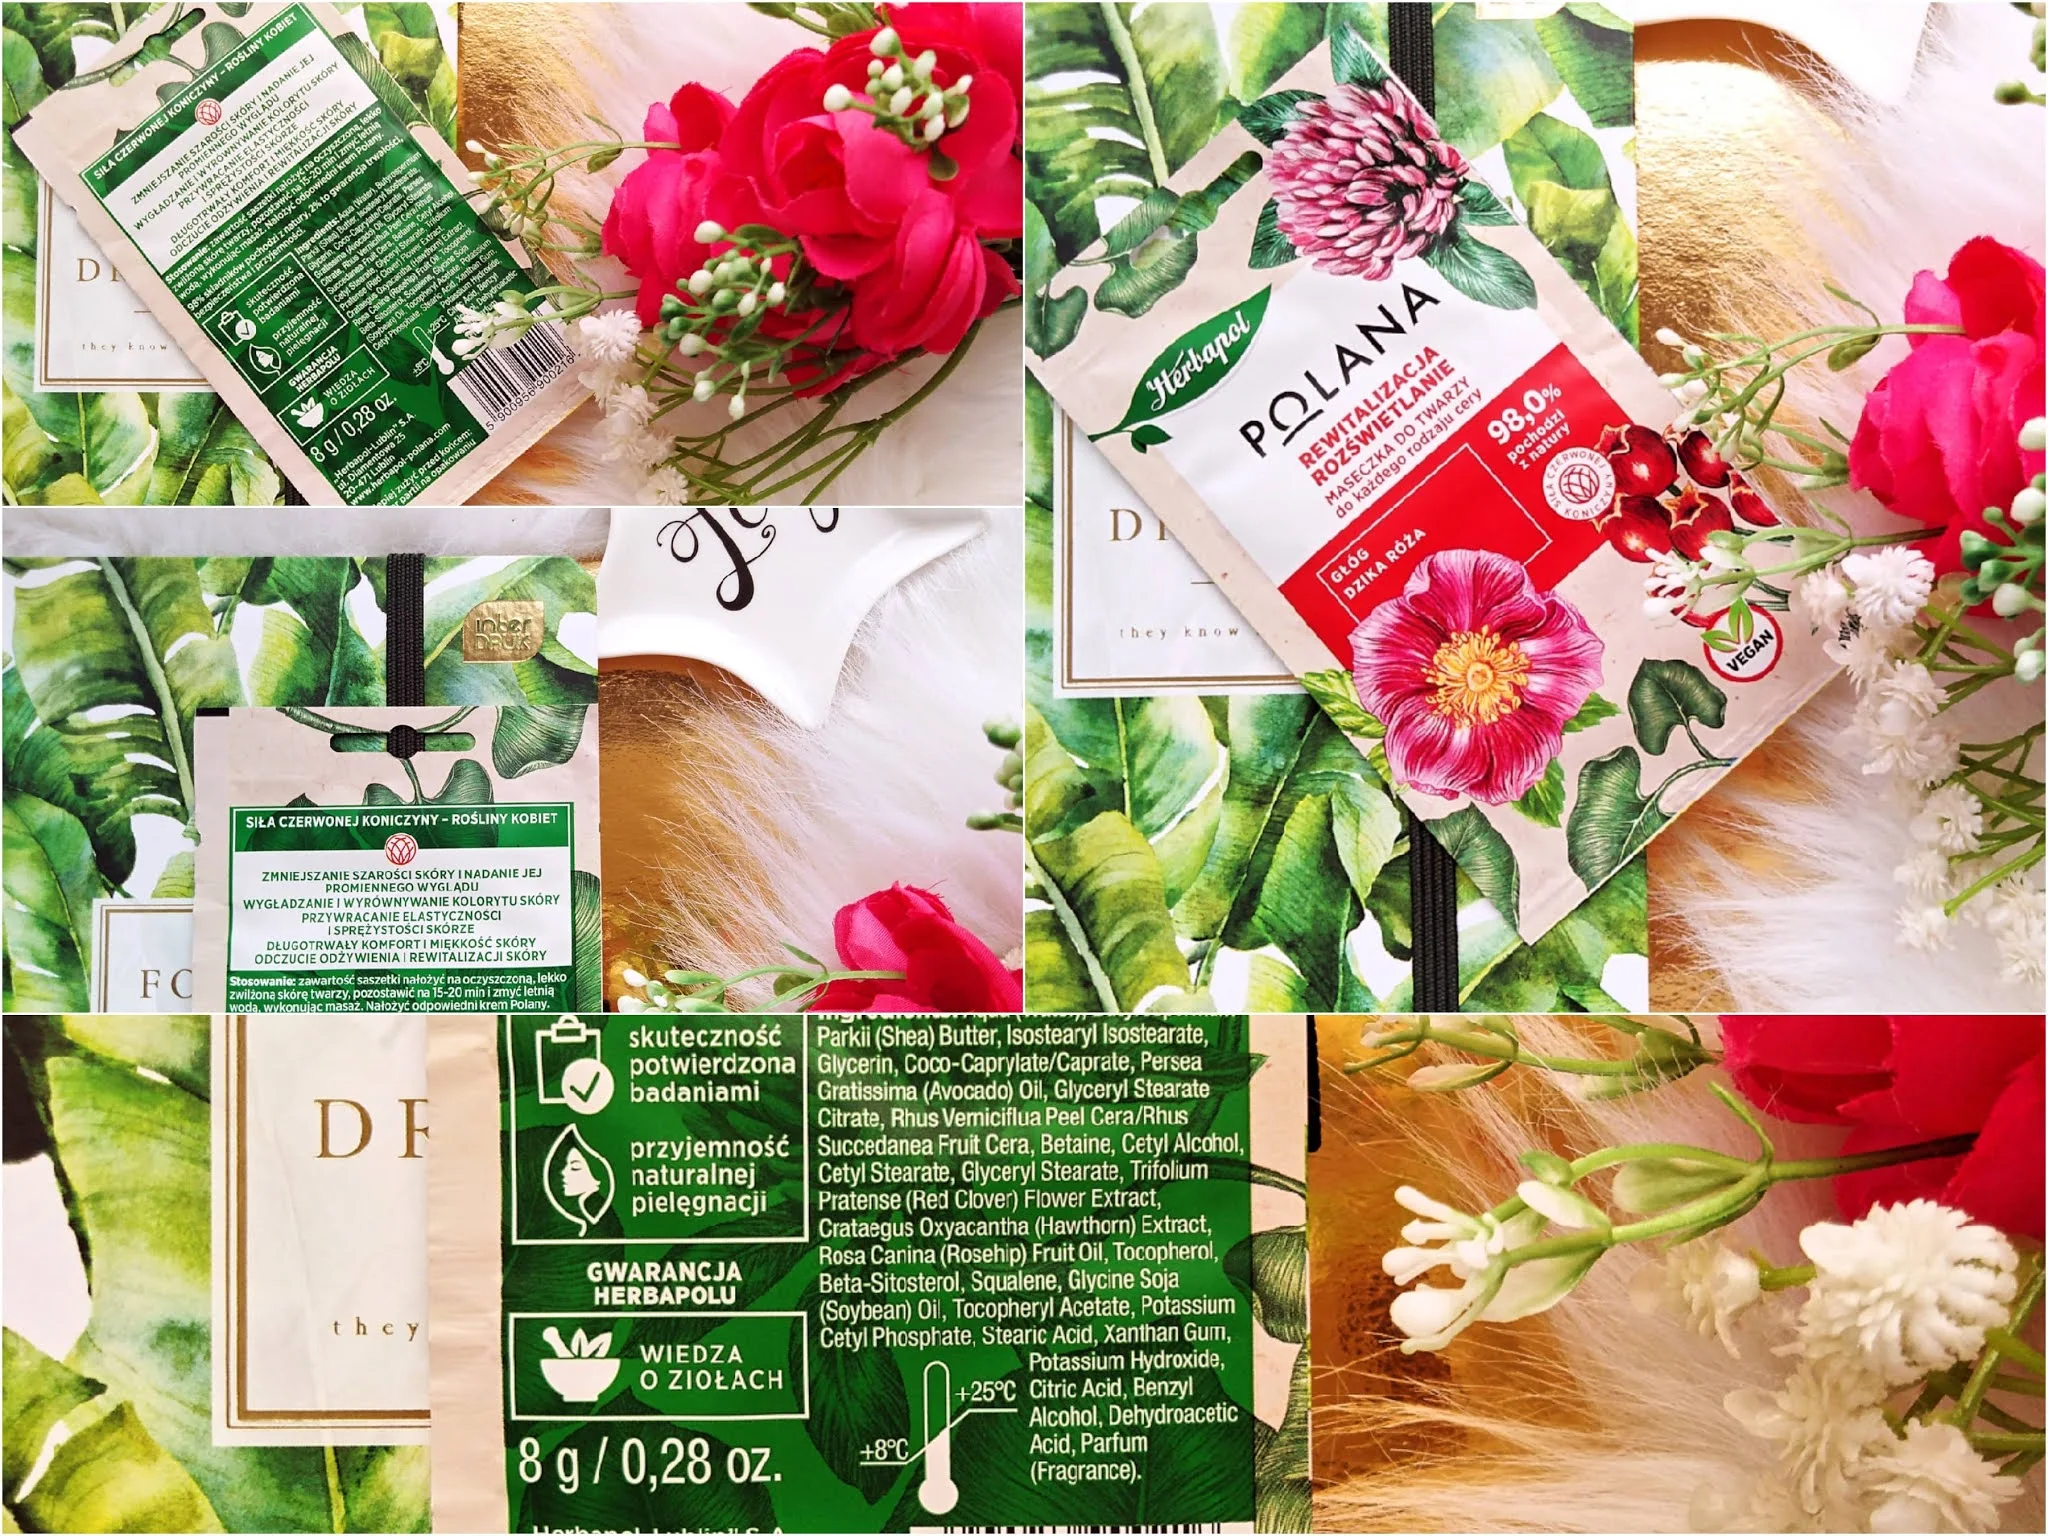 Herbapol polana maska rozświetlająca, Herbapol polana maska rozświetlająca róża&głóg blog kosmetyczny